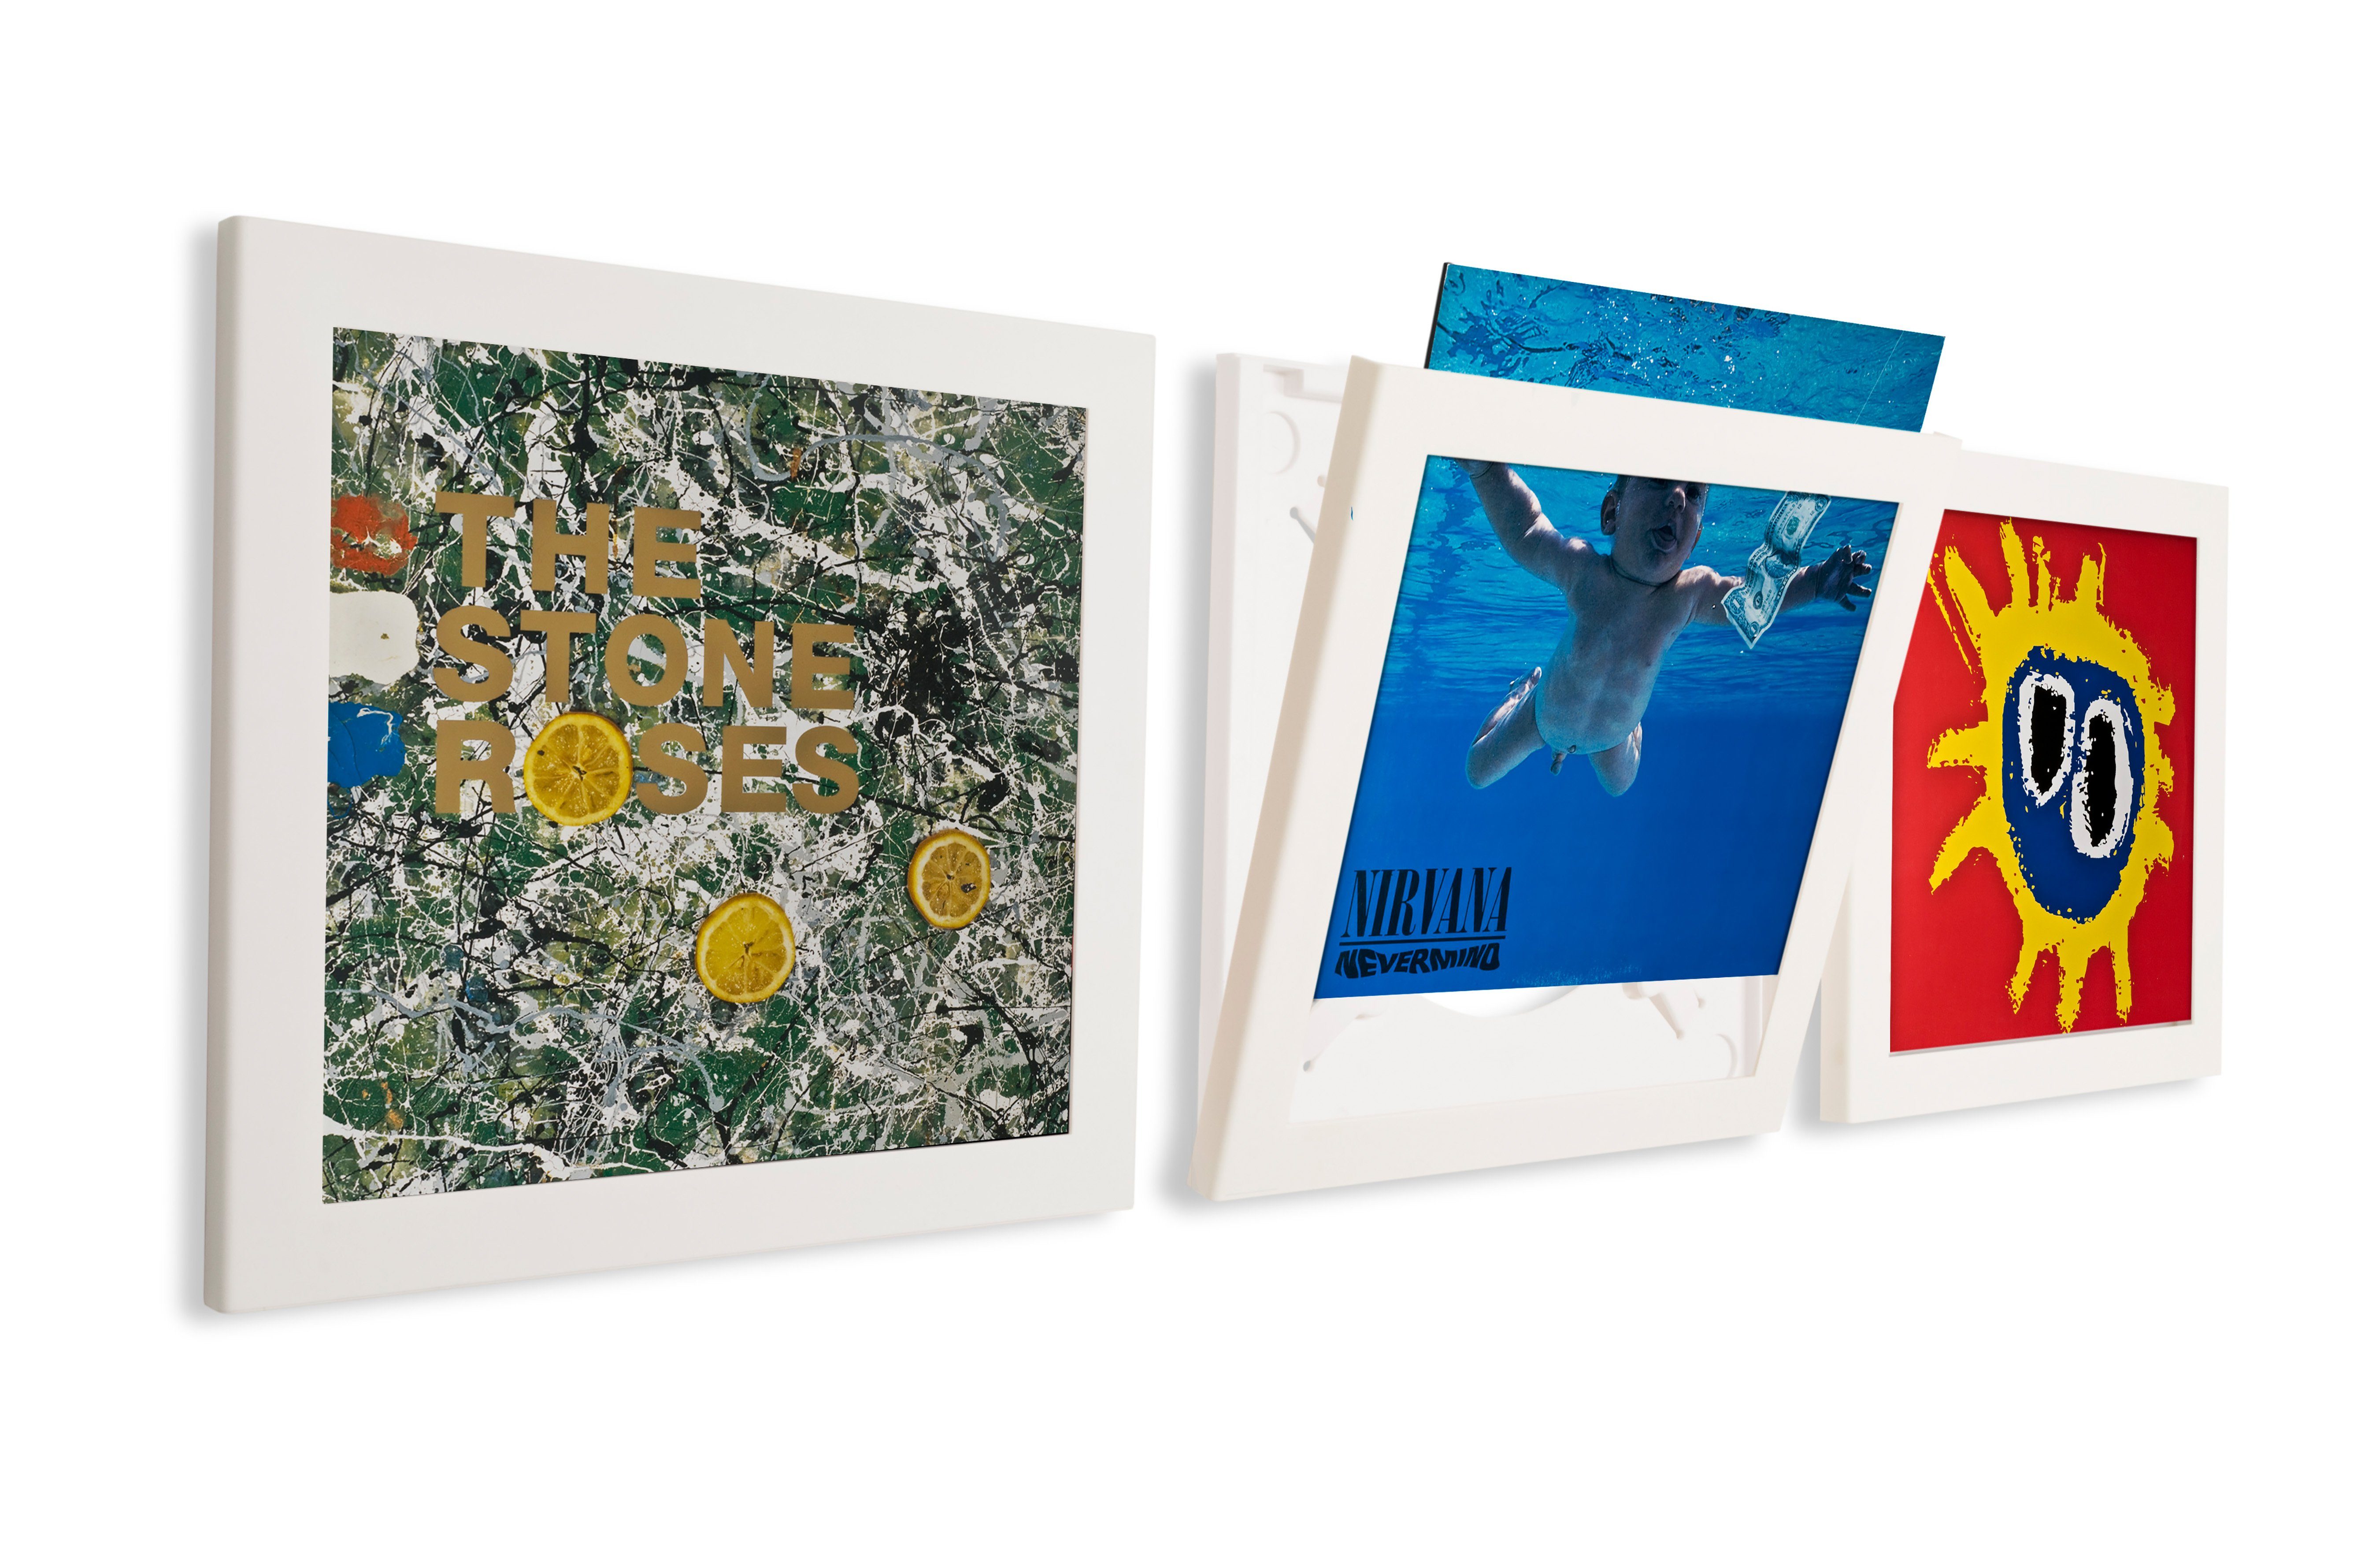 ART VINYL Bilderrahmen Play&Display Design Wechselrahmen für Vinyl LP Platten Cover Weiß